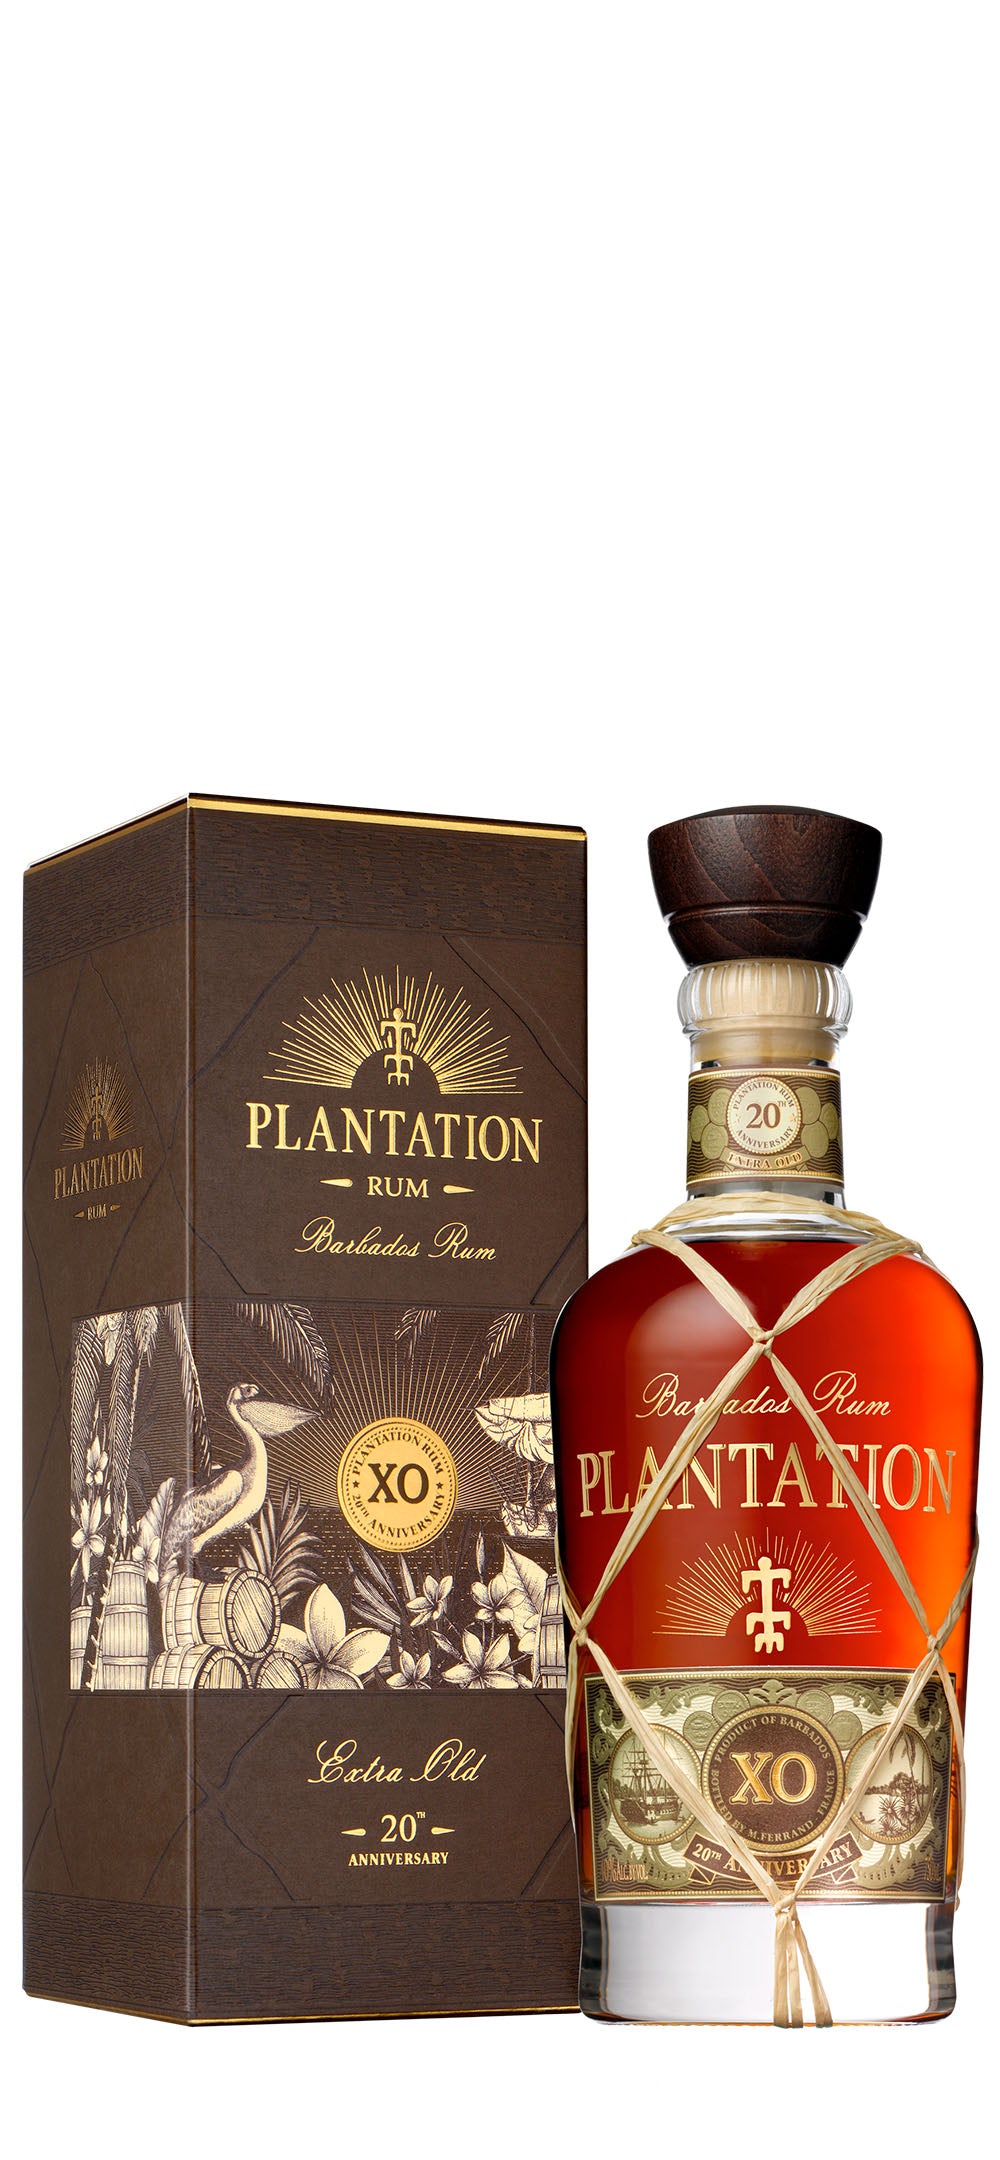 PLANTATION Rum XO 20 Anniversary